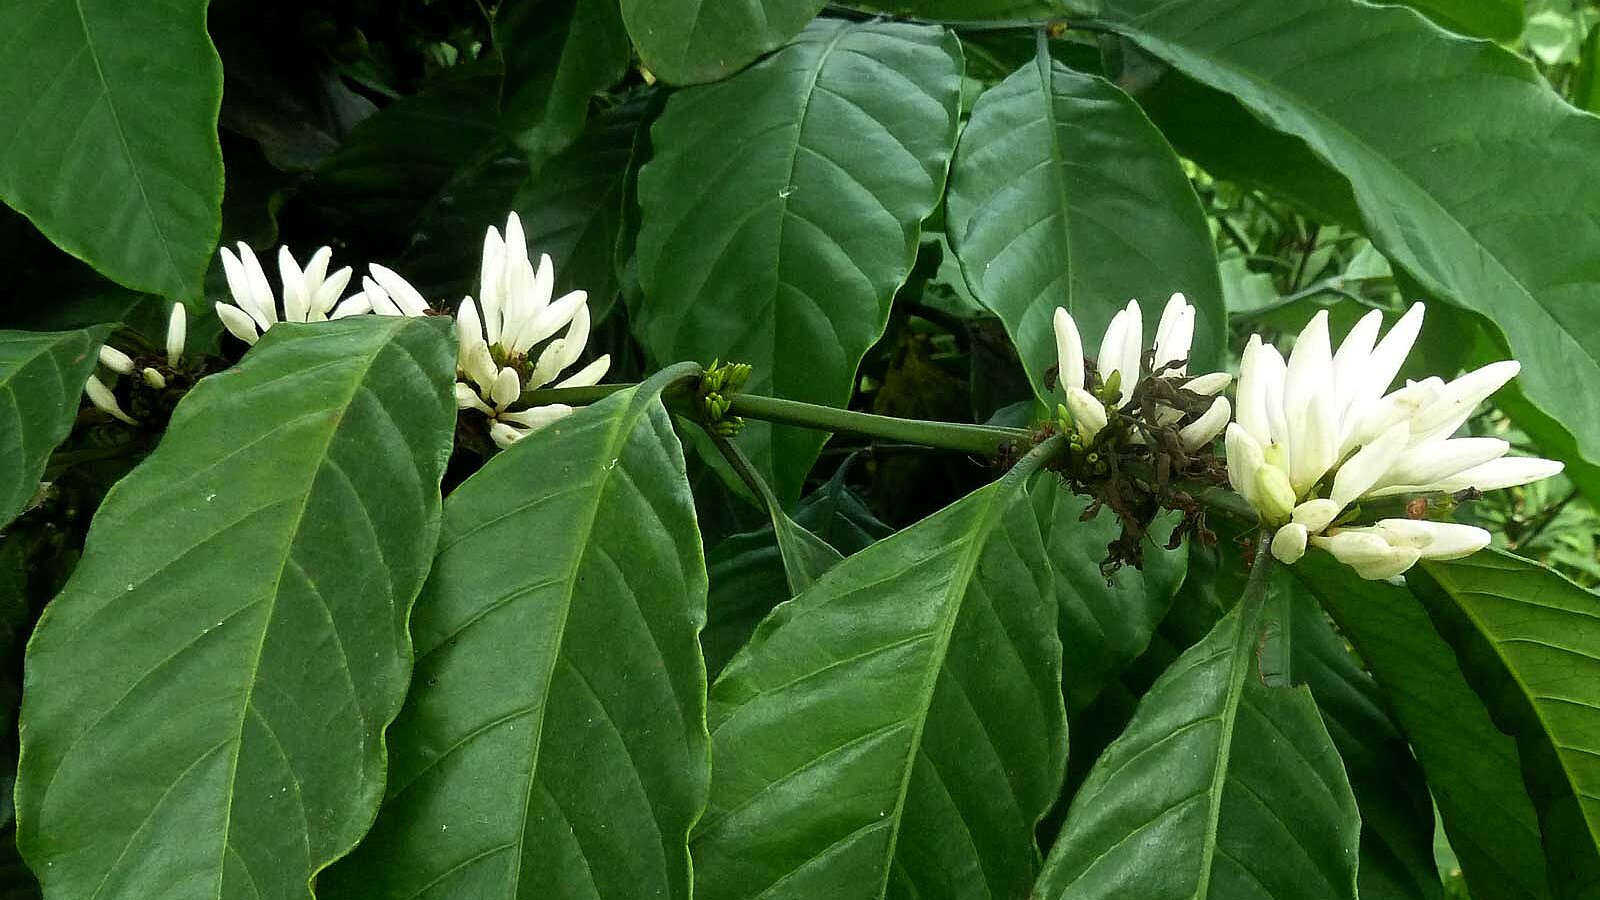 Lobodis fleur de cafe dans des plantations au congo